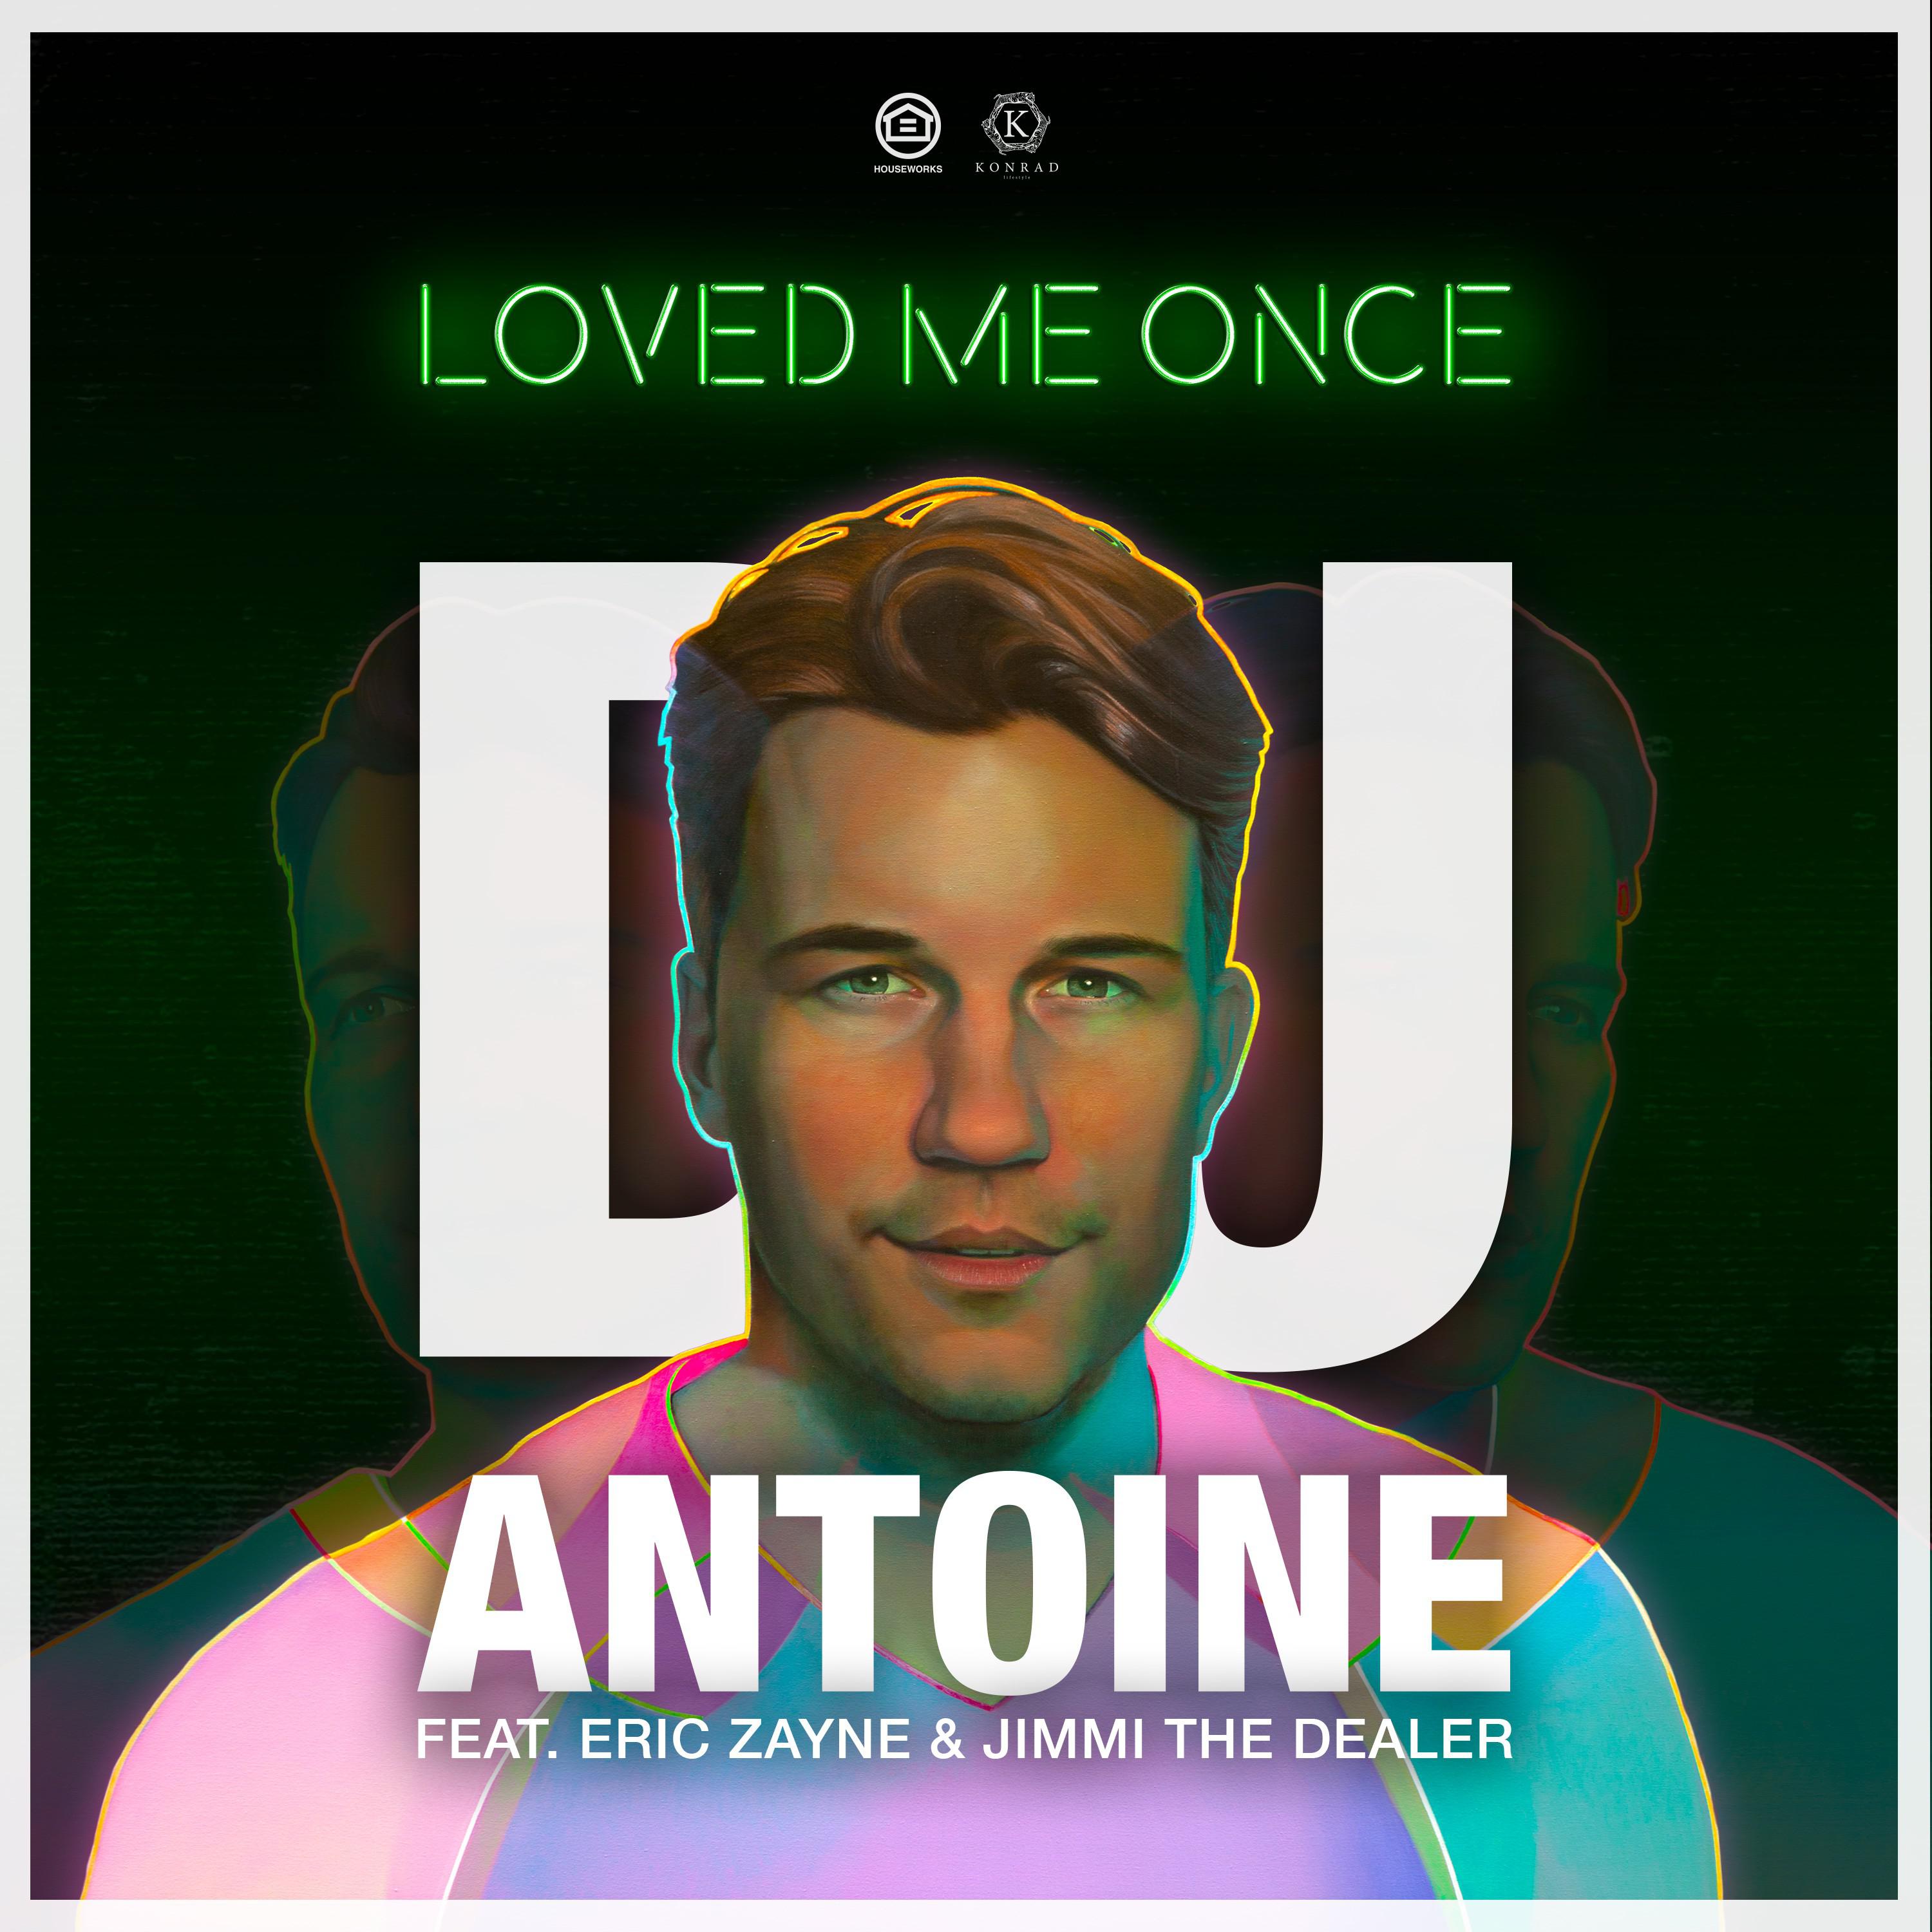 Loved Me Once (DJ Antoine vs Mad Mark 2k19 Extended Instrumental Mix)